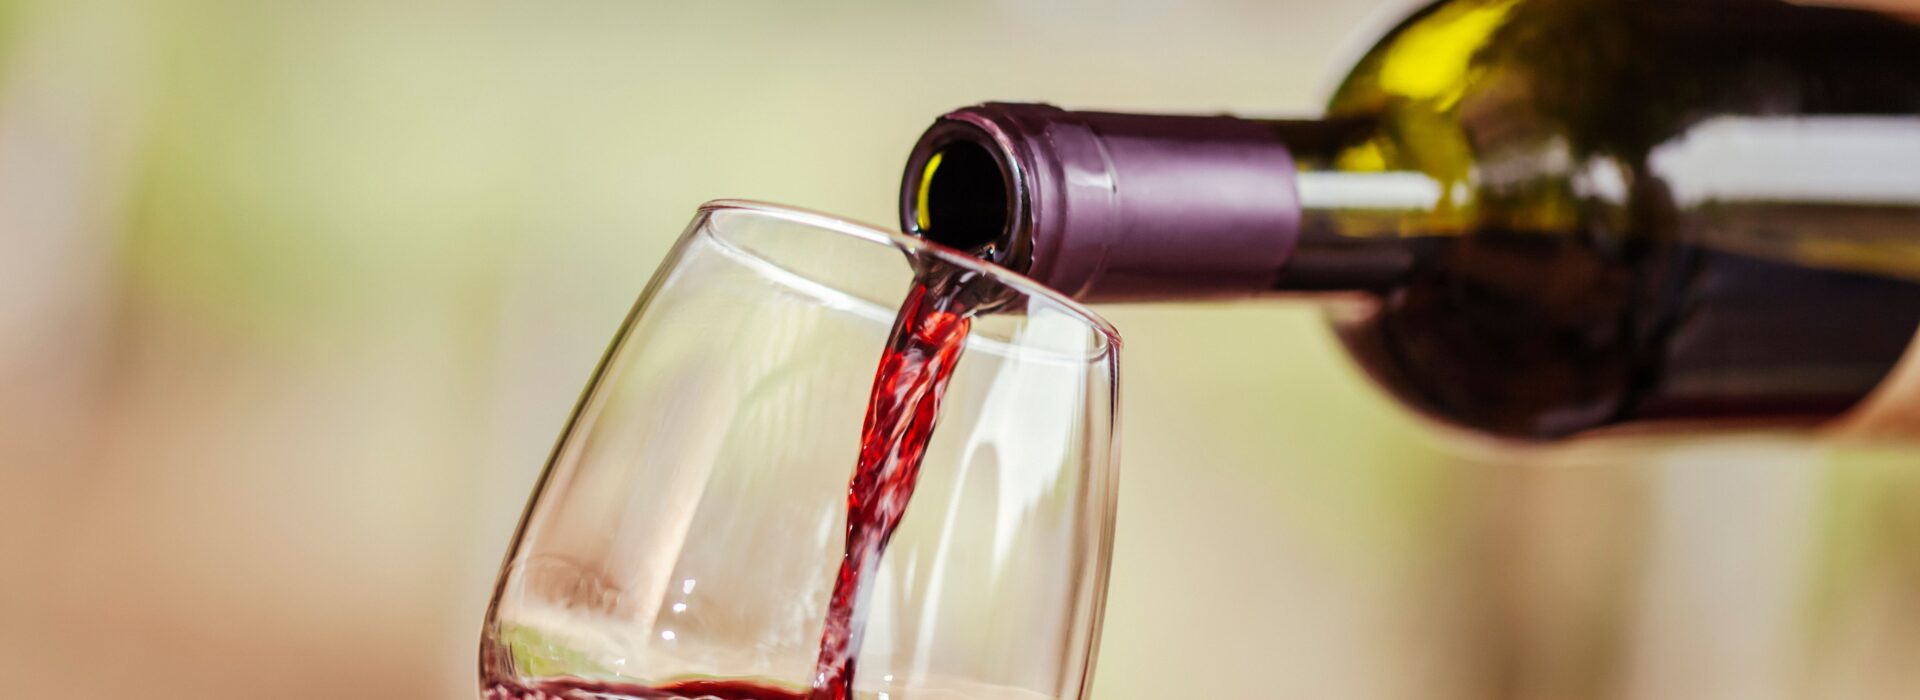 Cotes du Rhone Wein: Rotwein